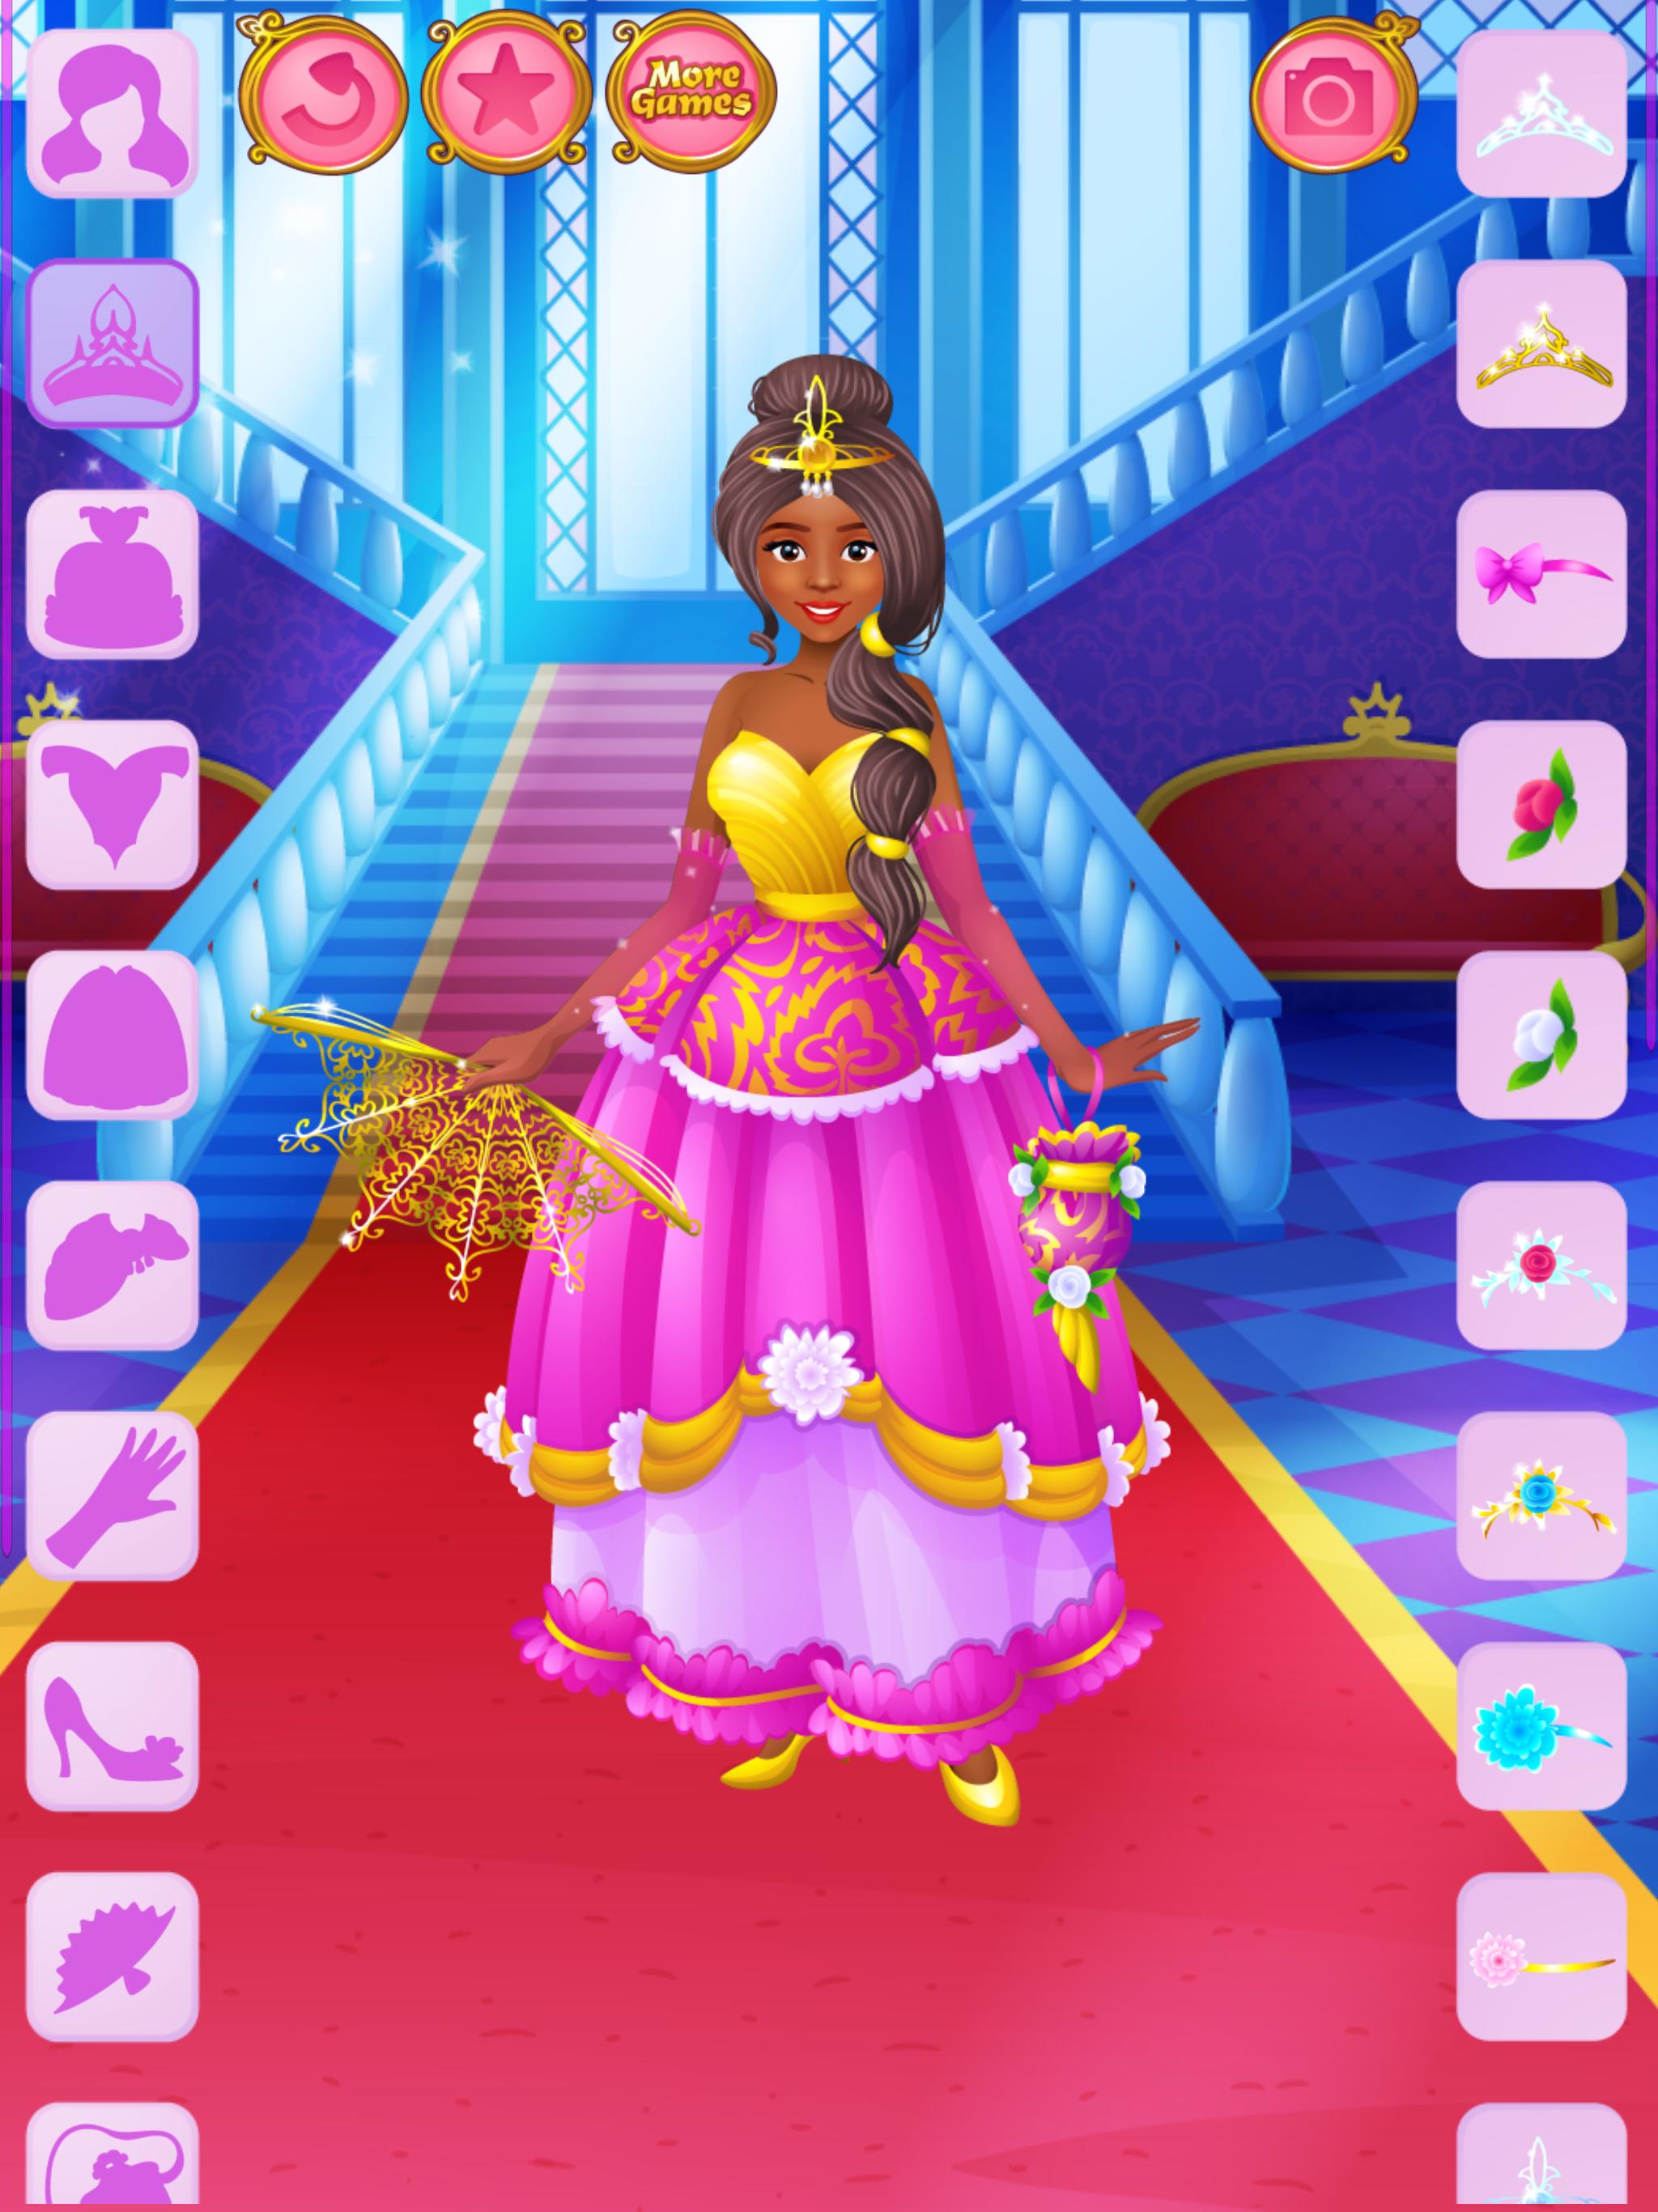 Dress up - Games for Girls 1.3.2 Screenshot 12